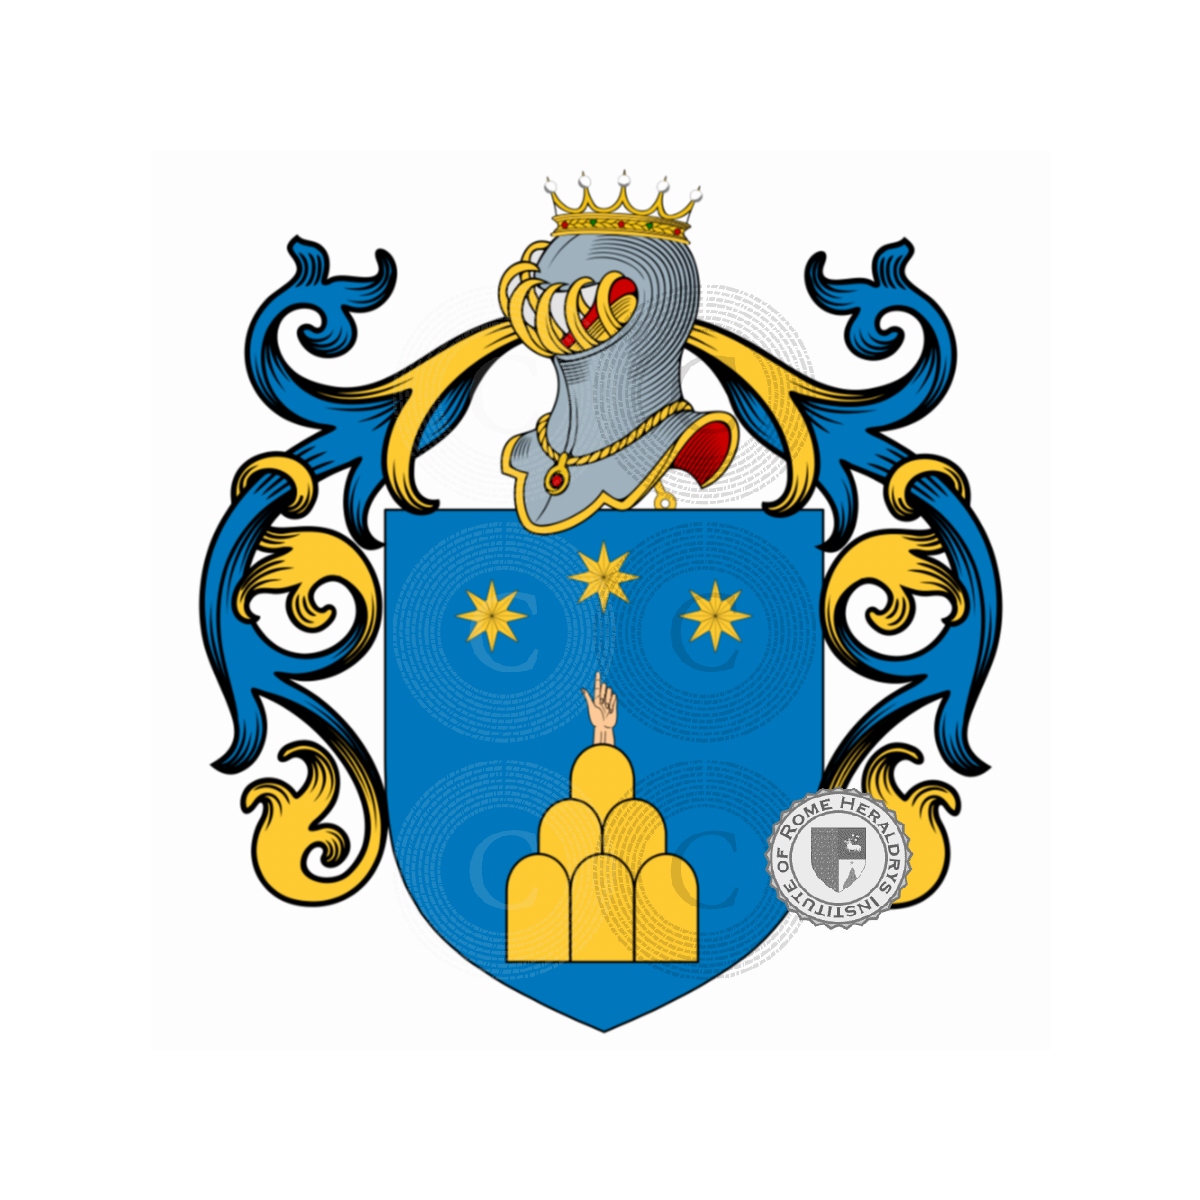 Escudo de la familiaFranceschi, de Franceschi